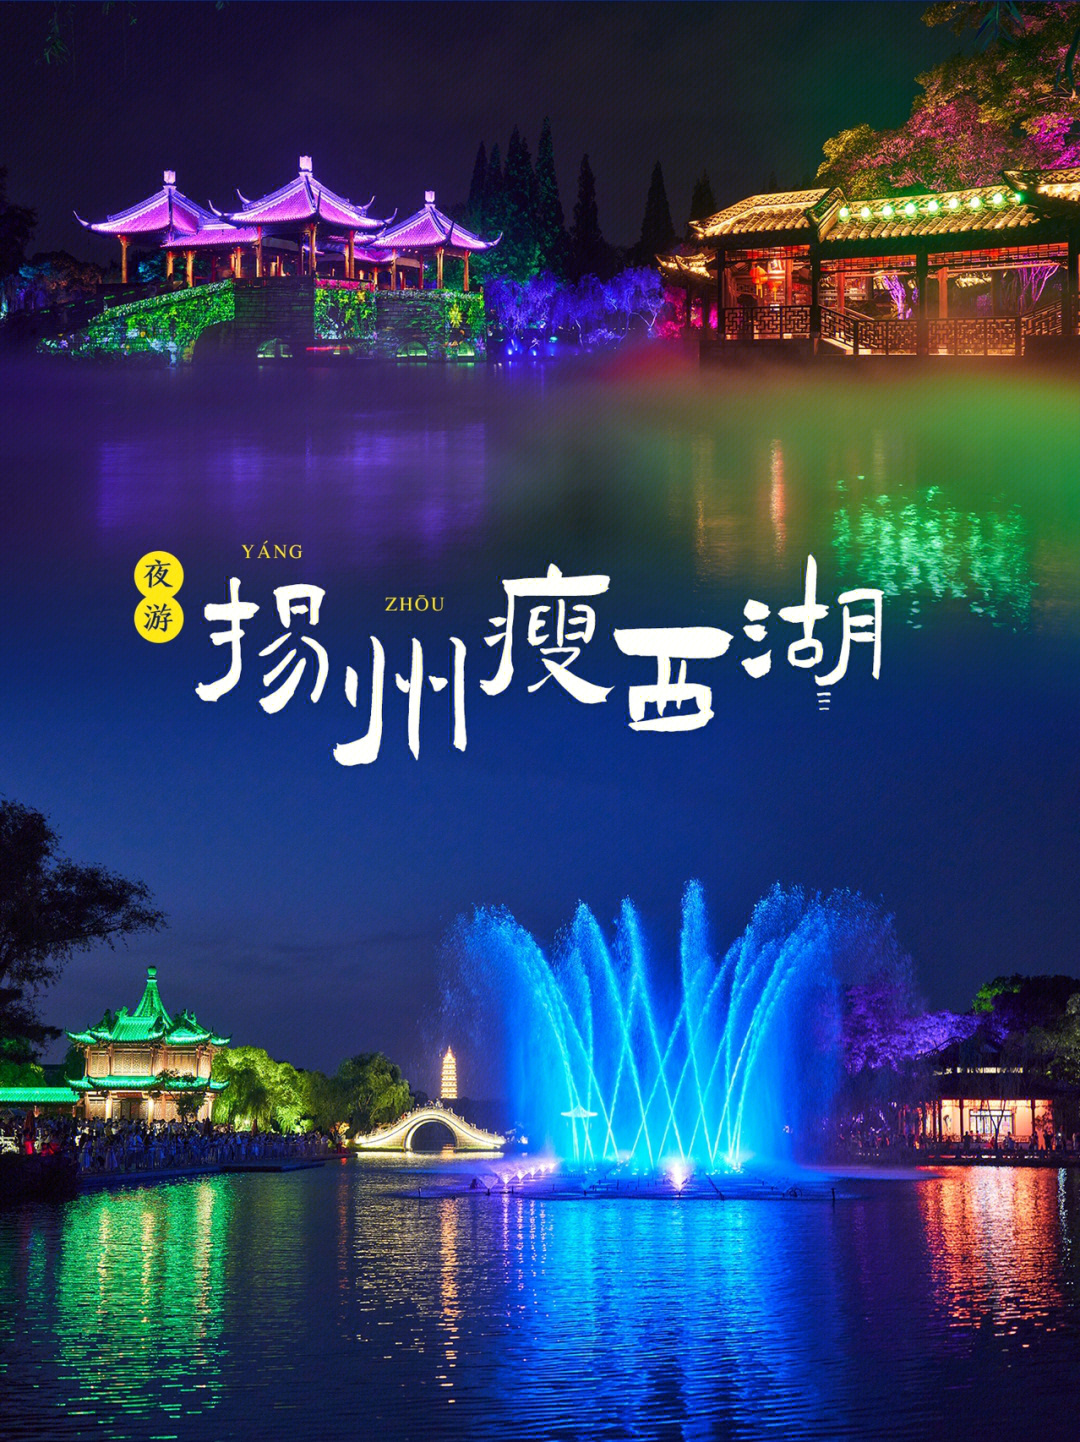 扬州旅游瘦西湖夜游灯光秀和夜景绝美